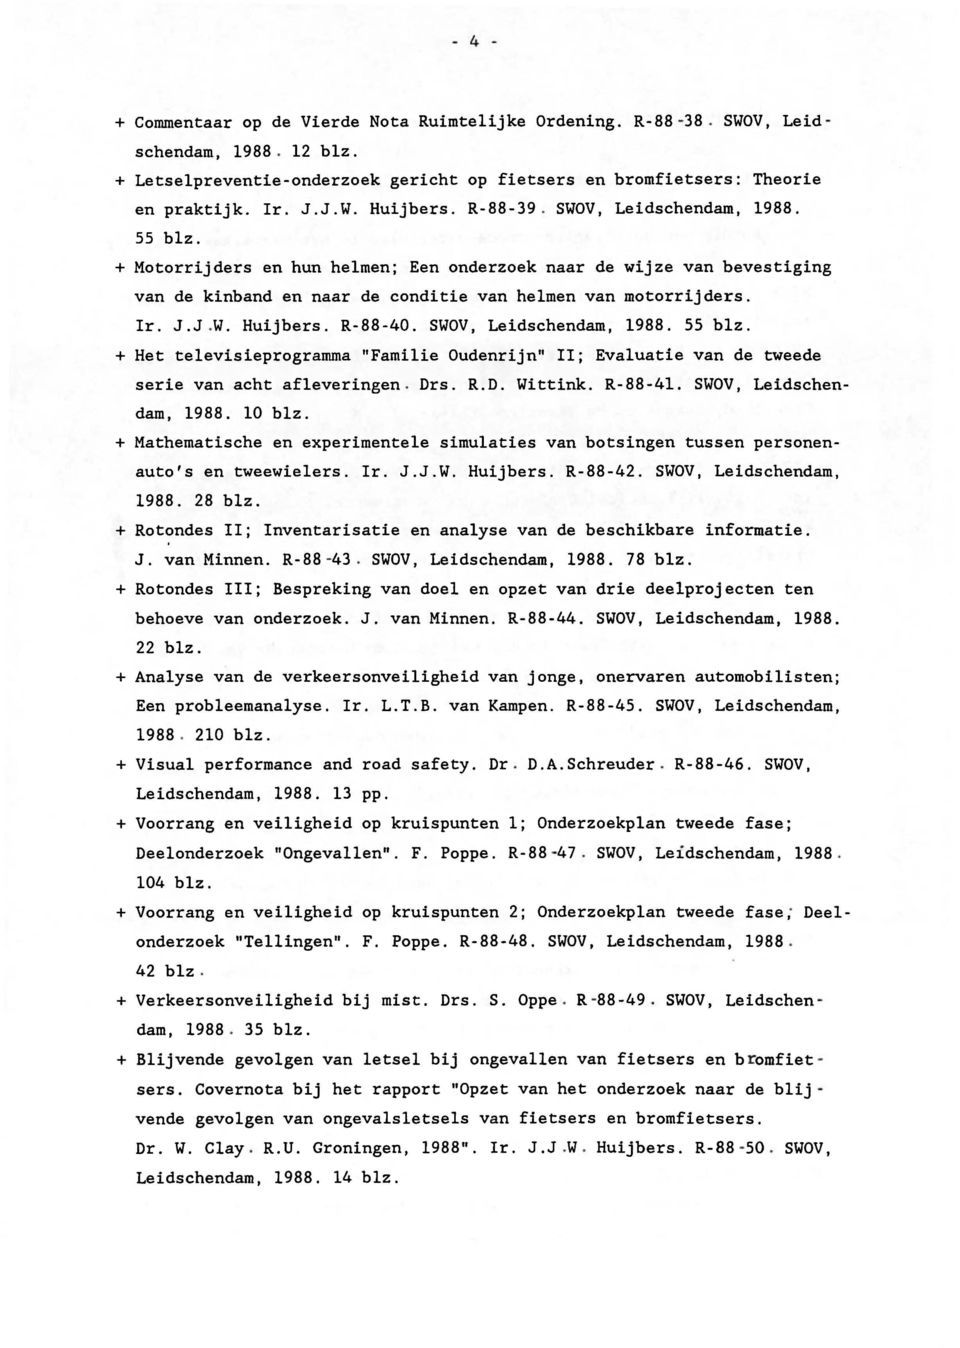 R-88-40. SWOV, Leidschendam, 1988. 55 blz. + Het televisieprogramma "Familie Oudenrijn" 11; Evaluatie van de tweede serie van acht afleveringen. Drs. R.D. Wittink. R-88-4l. SWOV, Leidschendam, 1988. 10 blz.